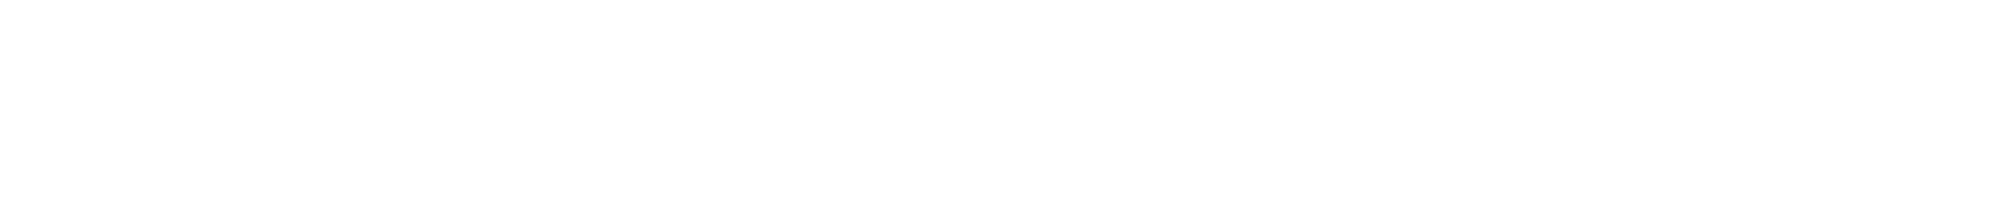 2-white-curve